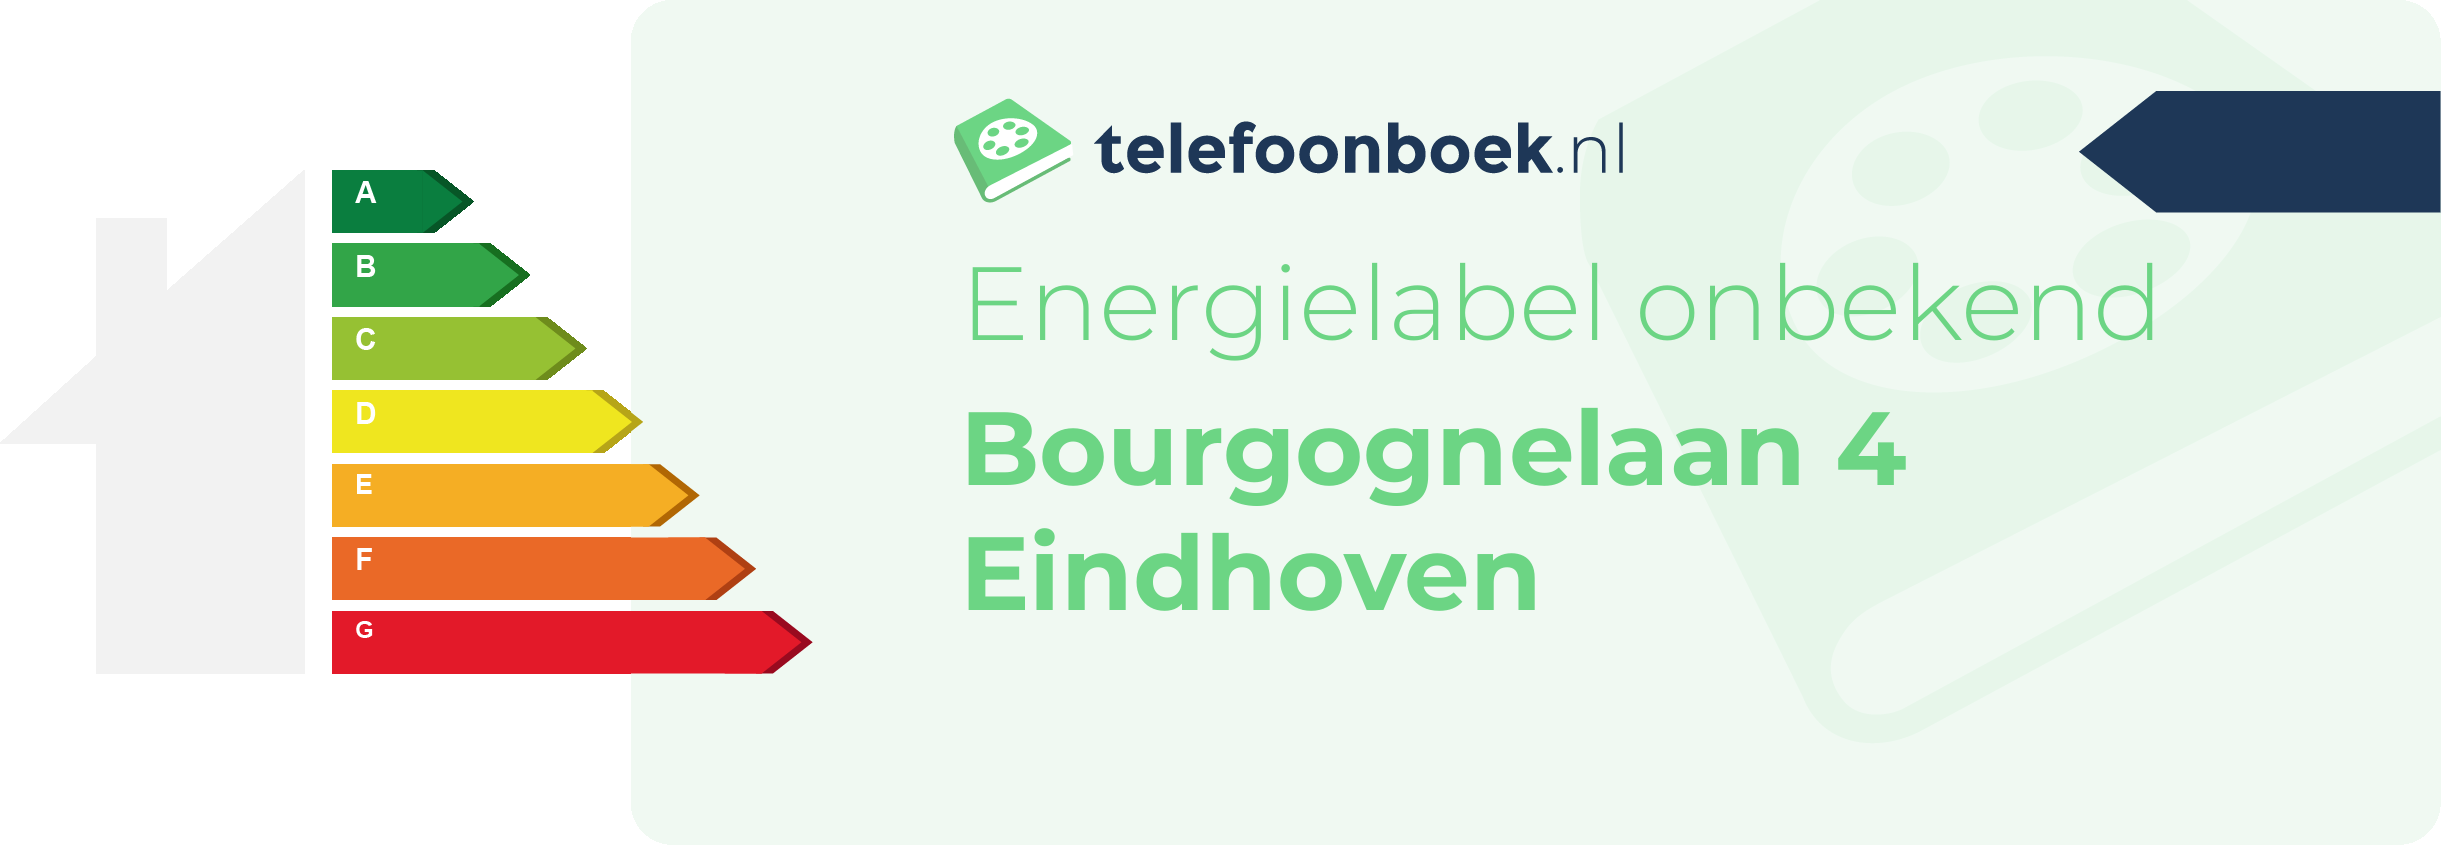 Energielabel Bourgognelaan 4 Eindhoven